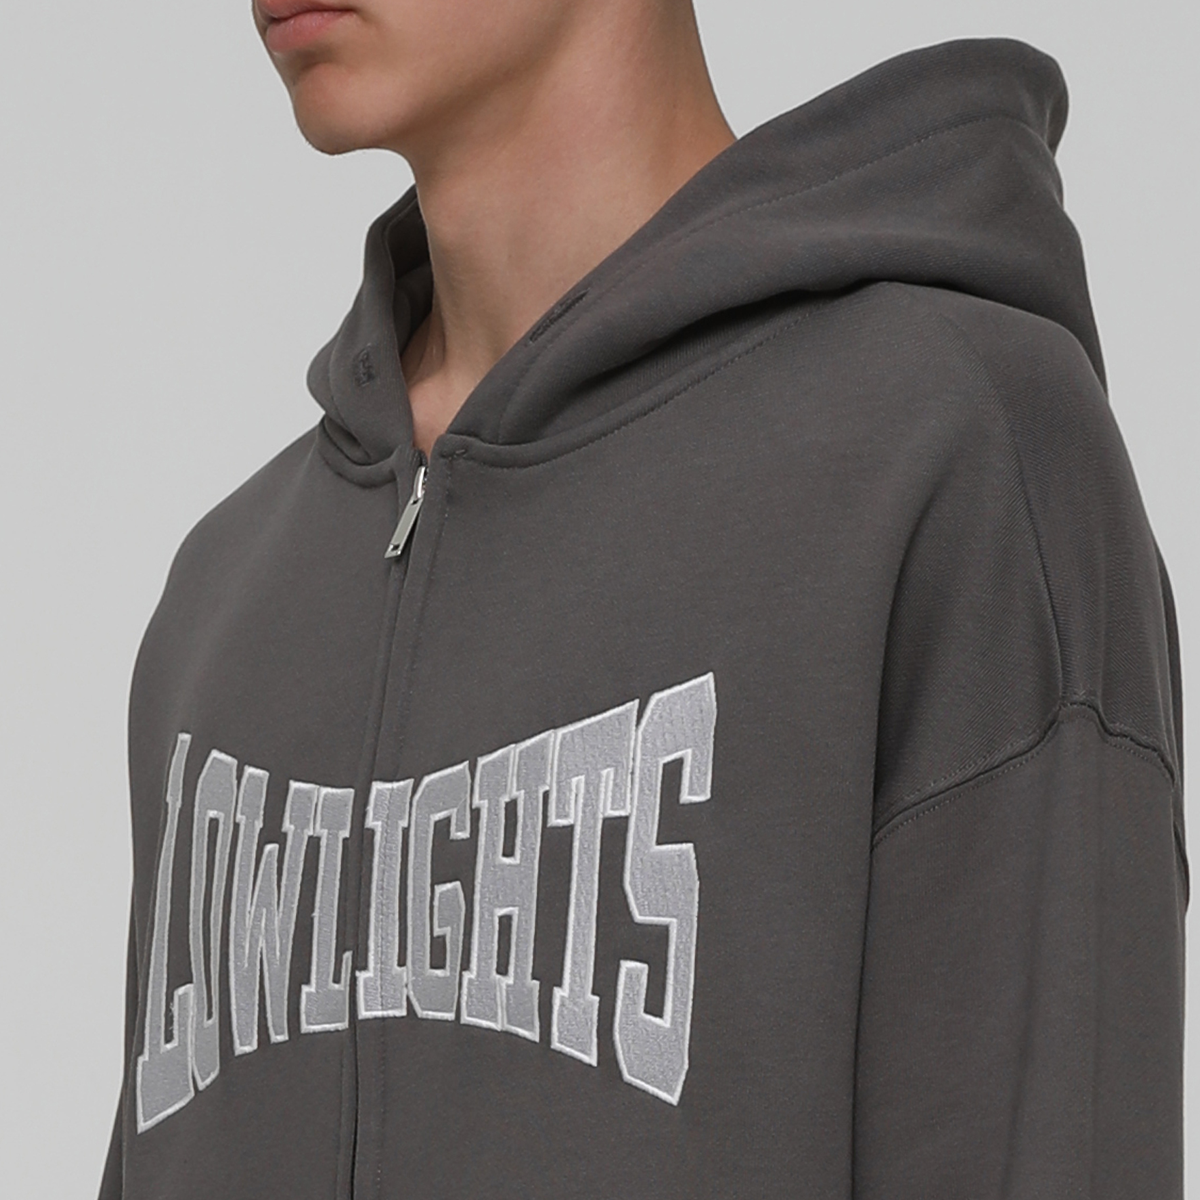 Low Lights Studios Boxer Zip-hoodie Hooded vesten Heren washed grey maat: S beschikbare maaten:S M L XL XXL